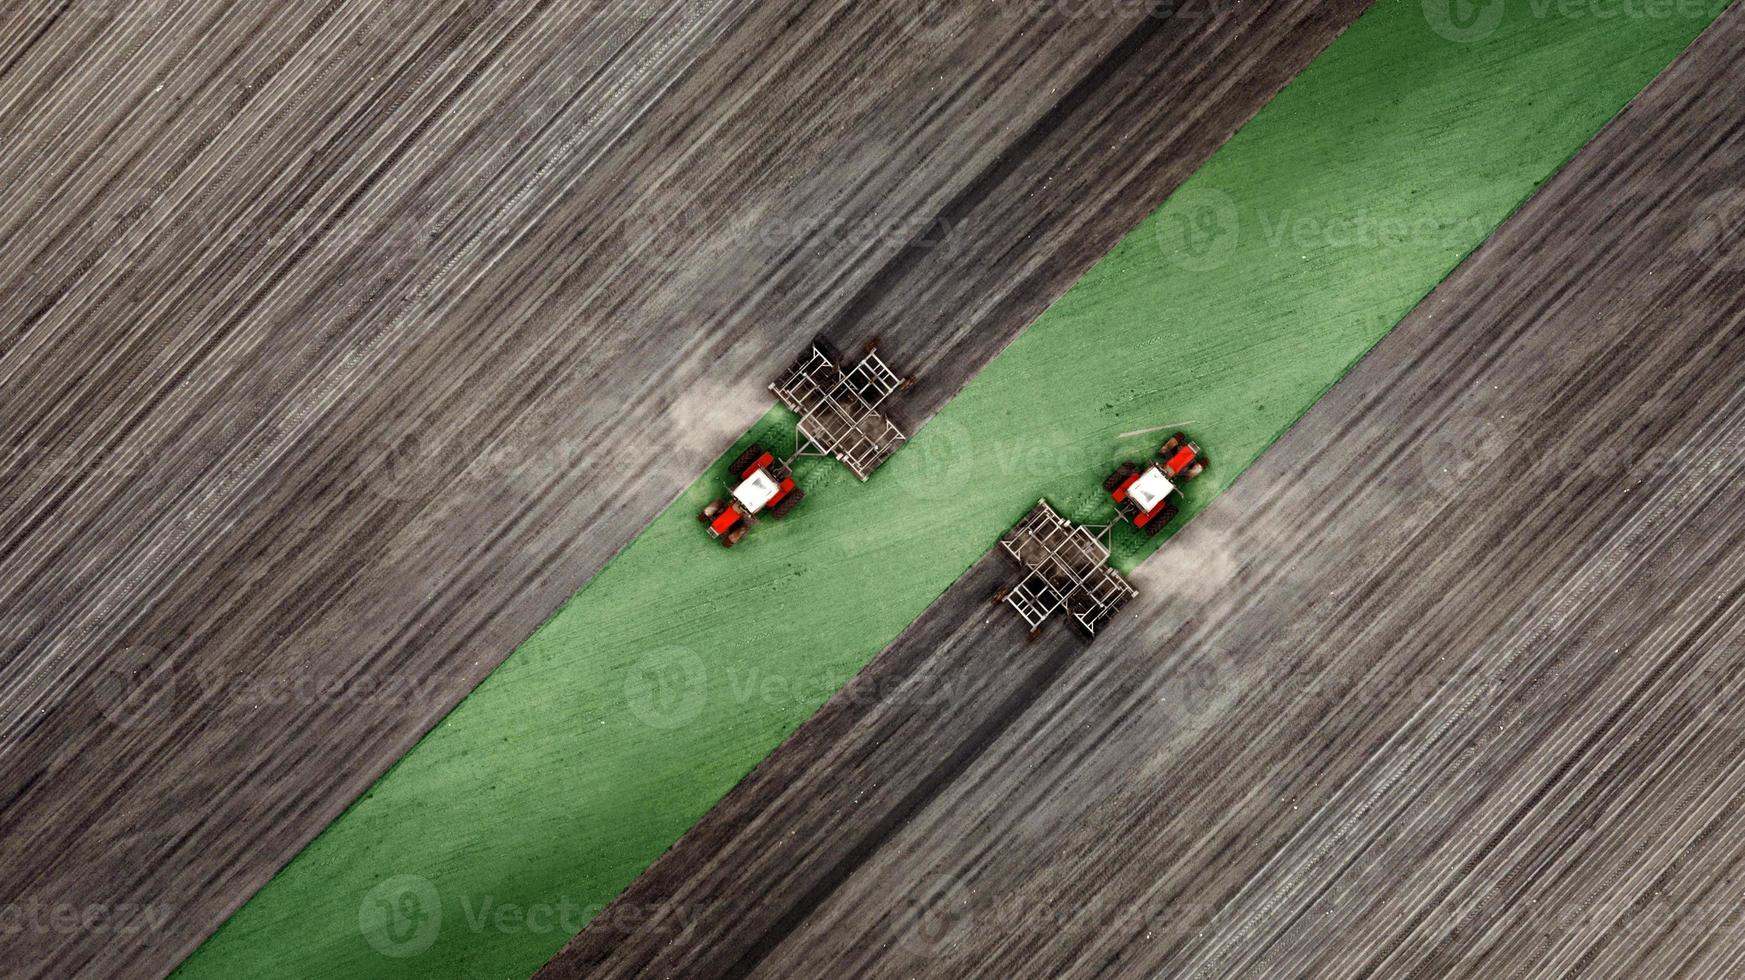 vue aérienne de dessus d'un tracteur, moissonneuse-batteuse labourant des terres agricoles au printemps photo